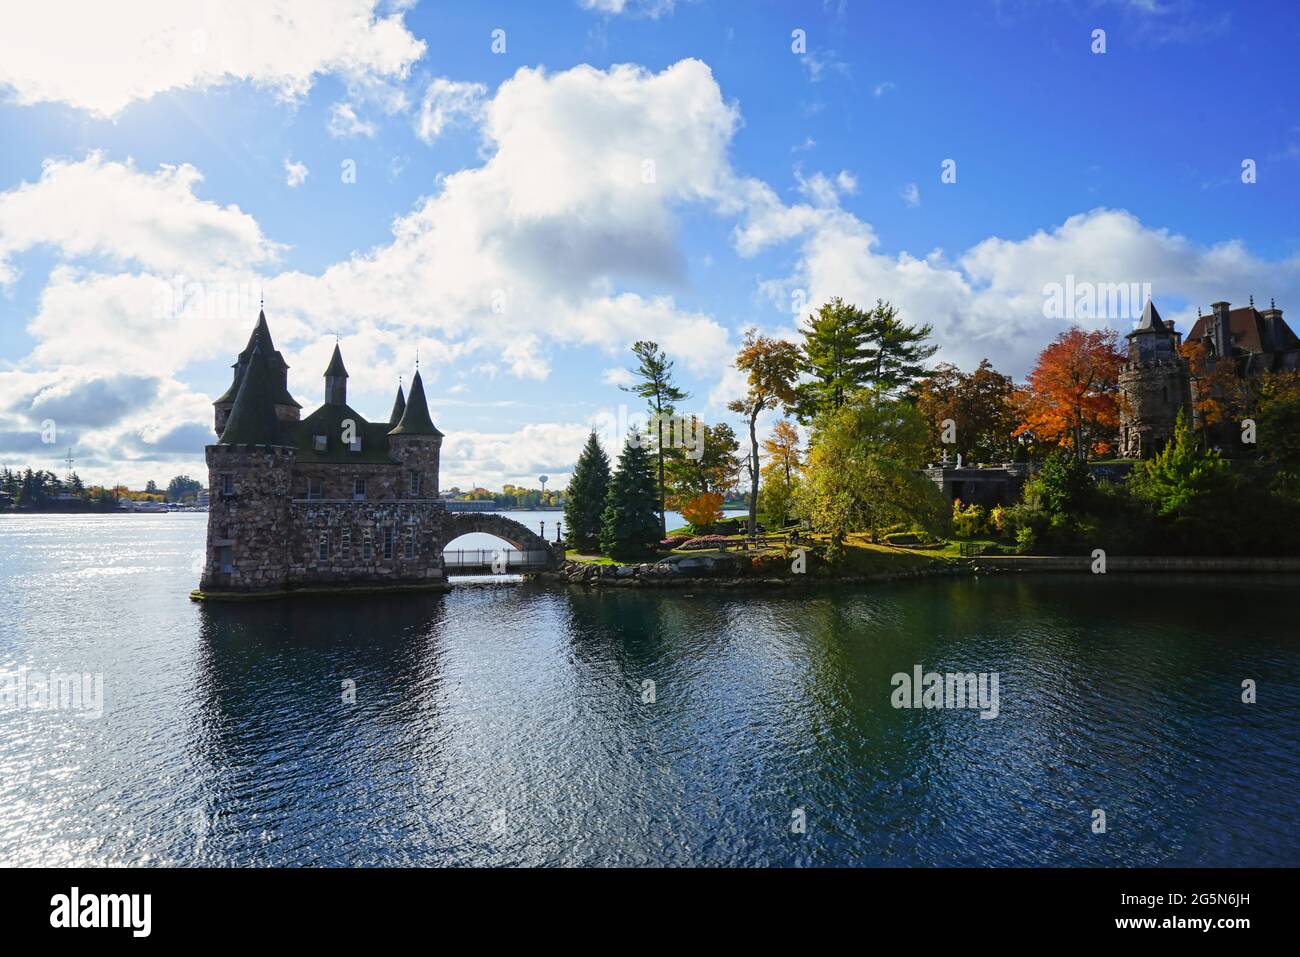 Historisches Boldt Castle auf Heart Island. Baum, Blätter, Fluss, blauer Himmel.Herbst auf den Thousand Islands am St. Lawrence River. New York State, 2016. Stockfoto